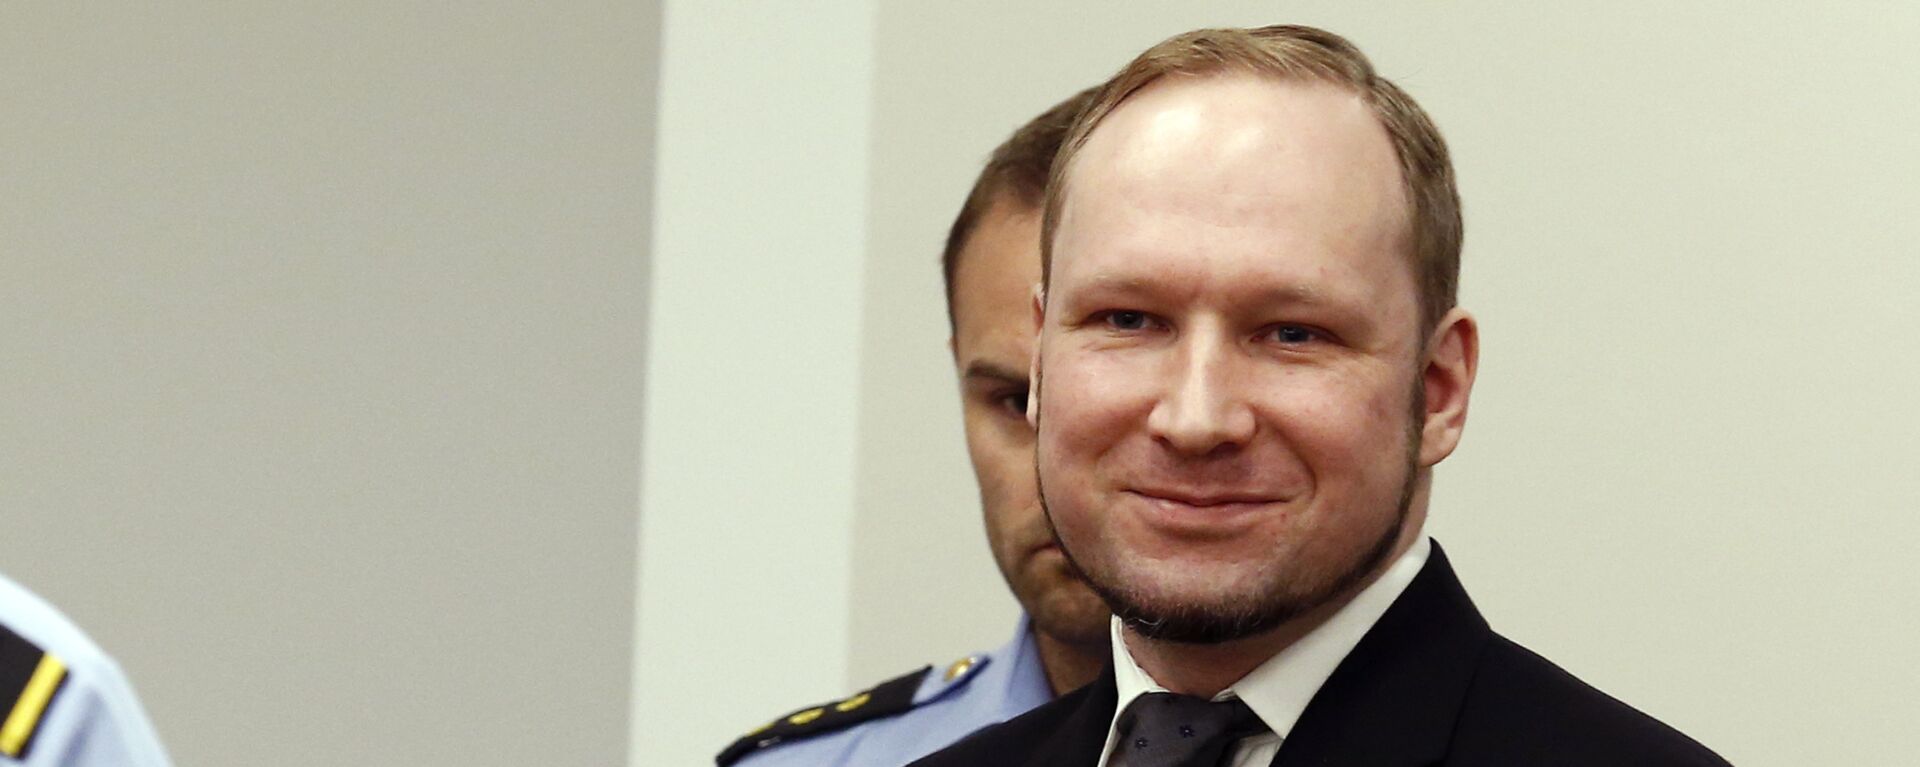 Anders Behring Breivik (file) - Sputnik International, 1920, 29.11.2021